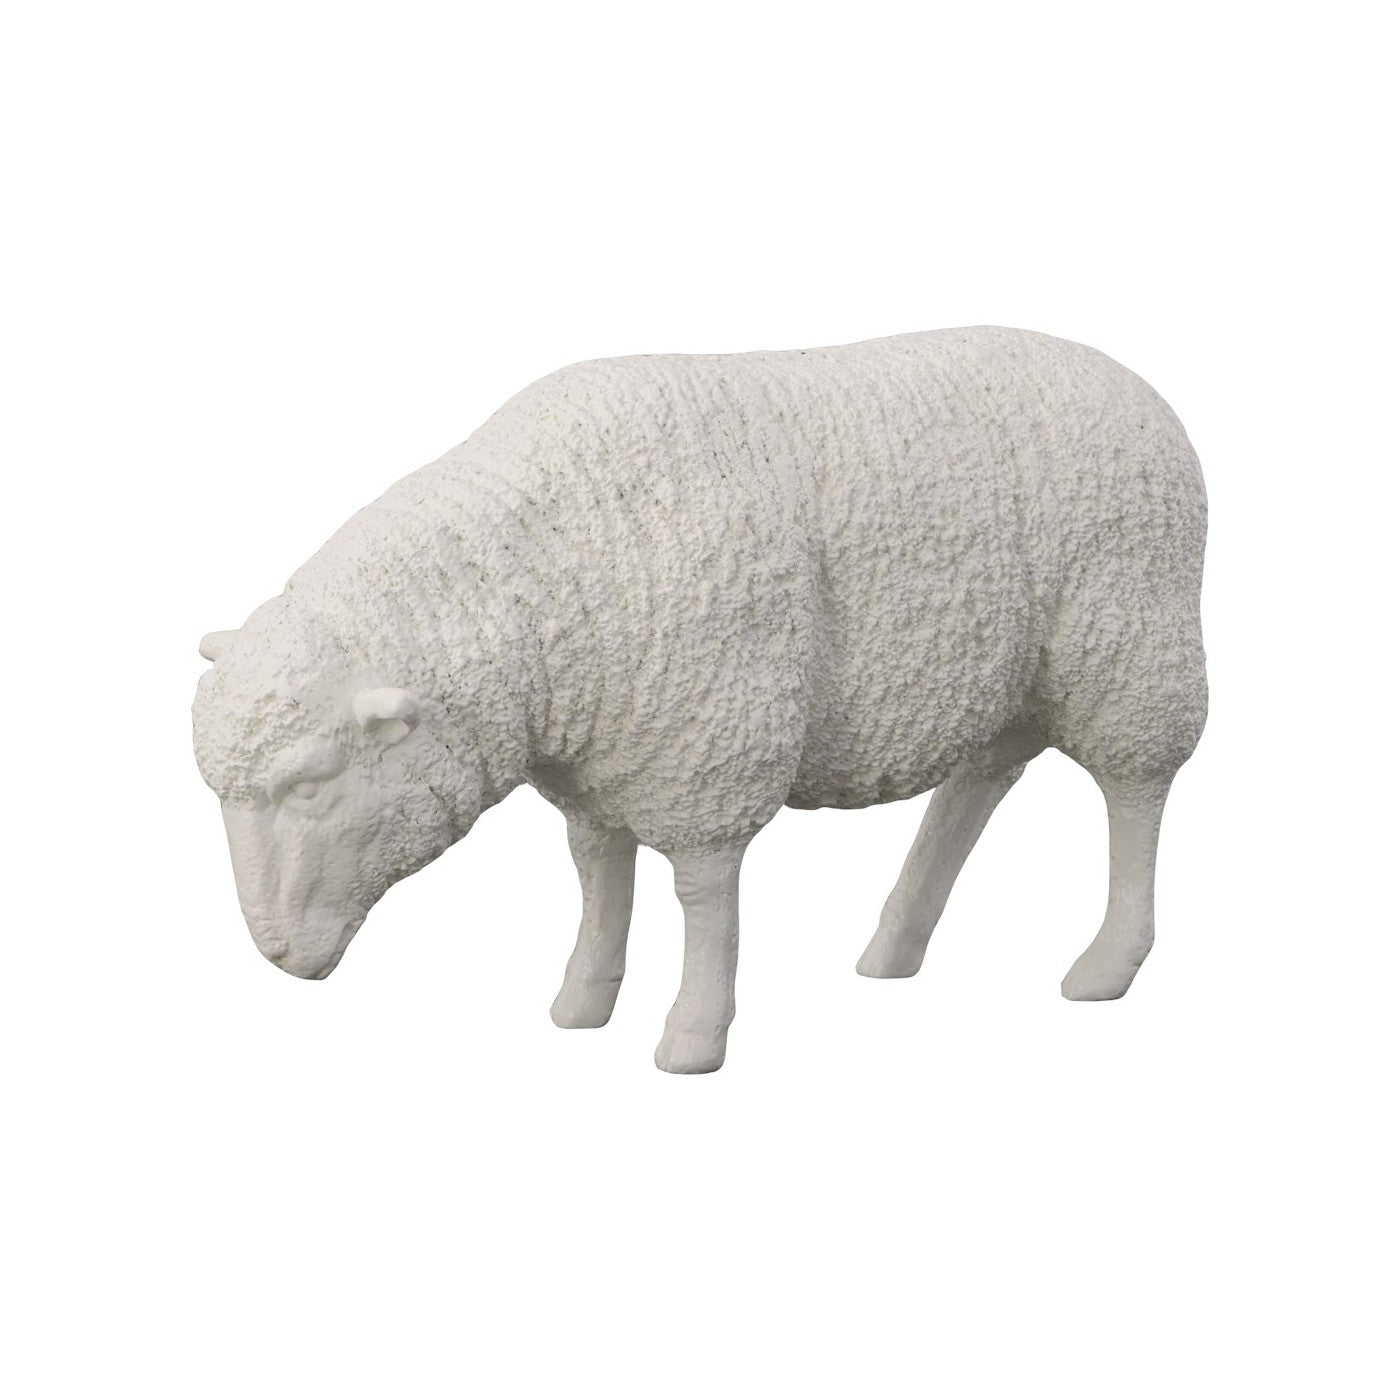 Sheep Sculpture - Statue